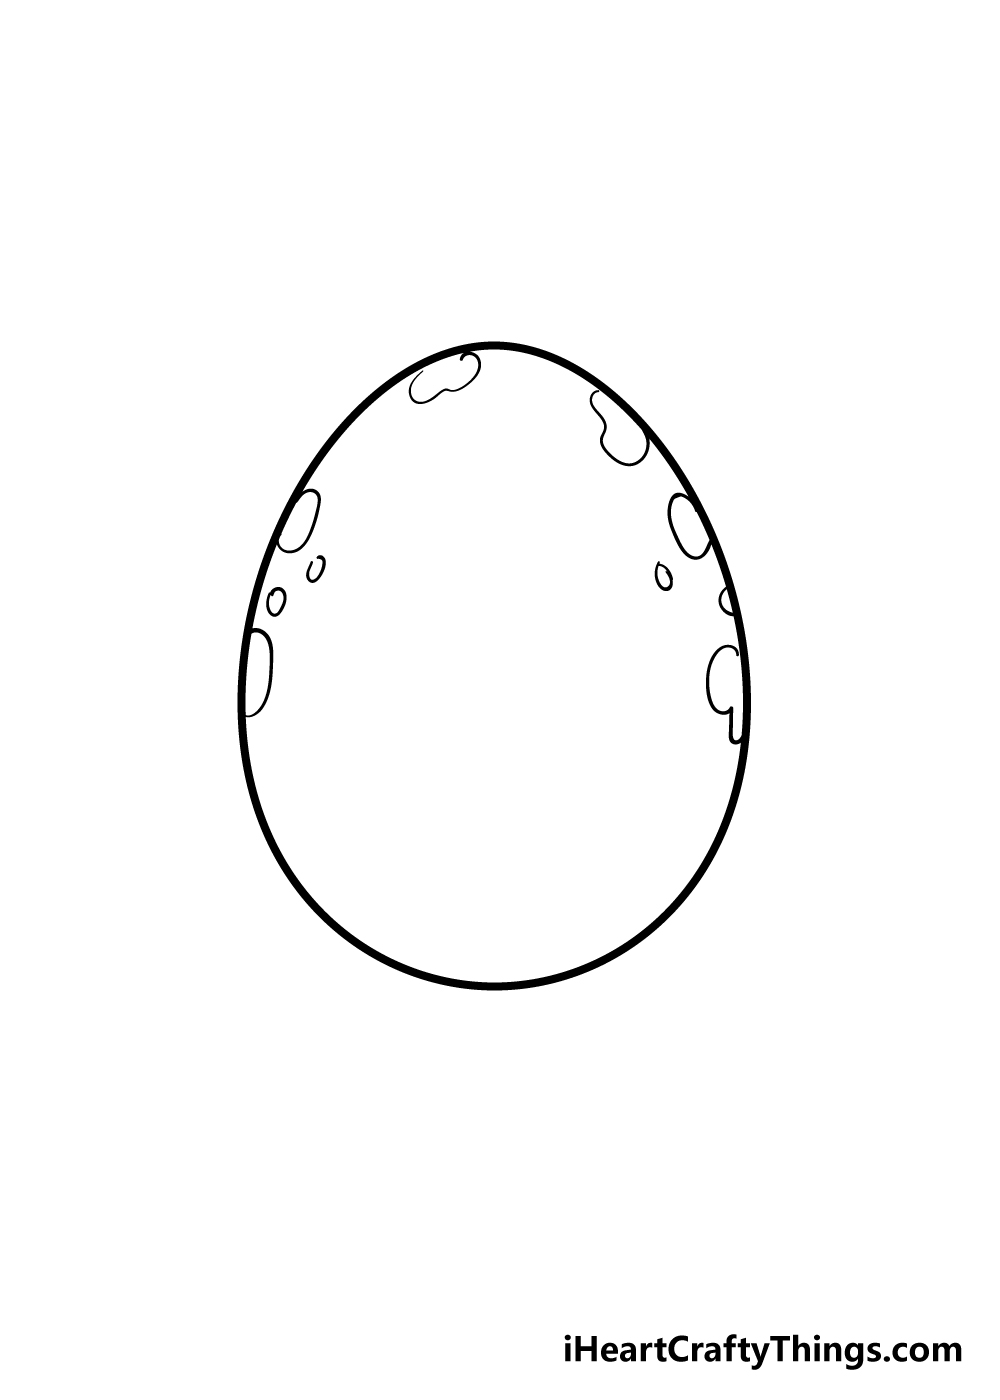 3 4 - Hướng dẫn cách vẽ quả trứng đơn giản và giản dị với 7 bước cơ bản